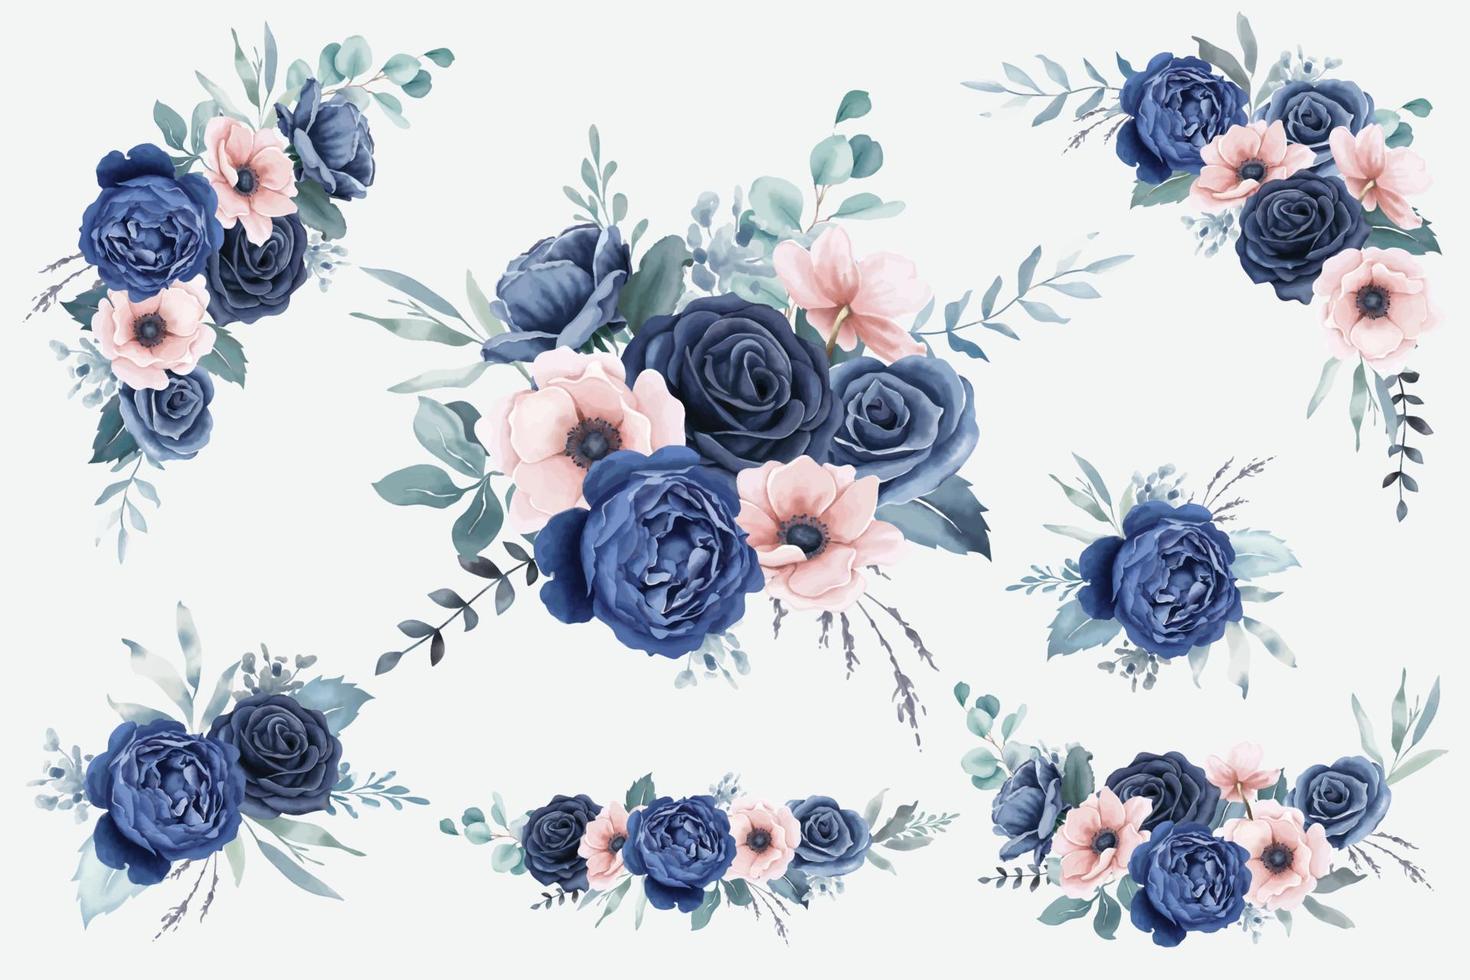 aquarel marineblauwe rozen en perzik anemonen boeketten vector